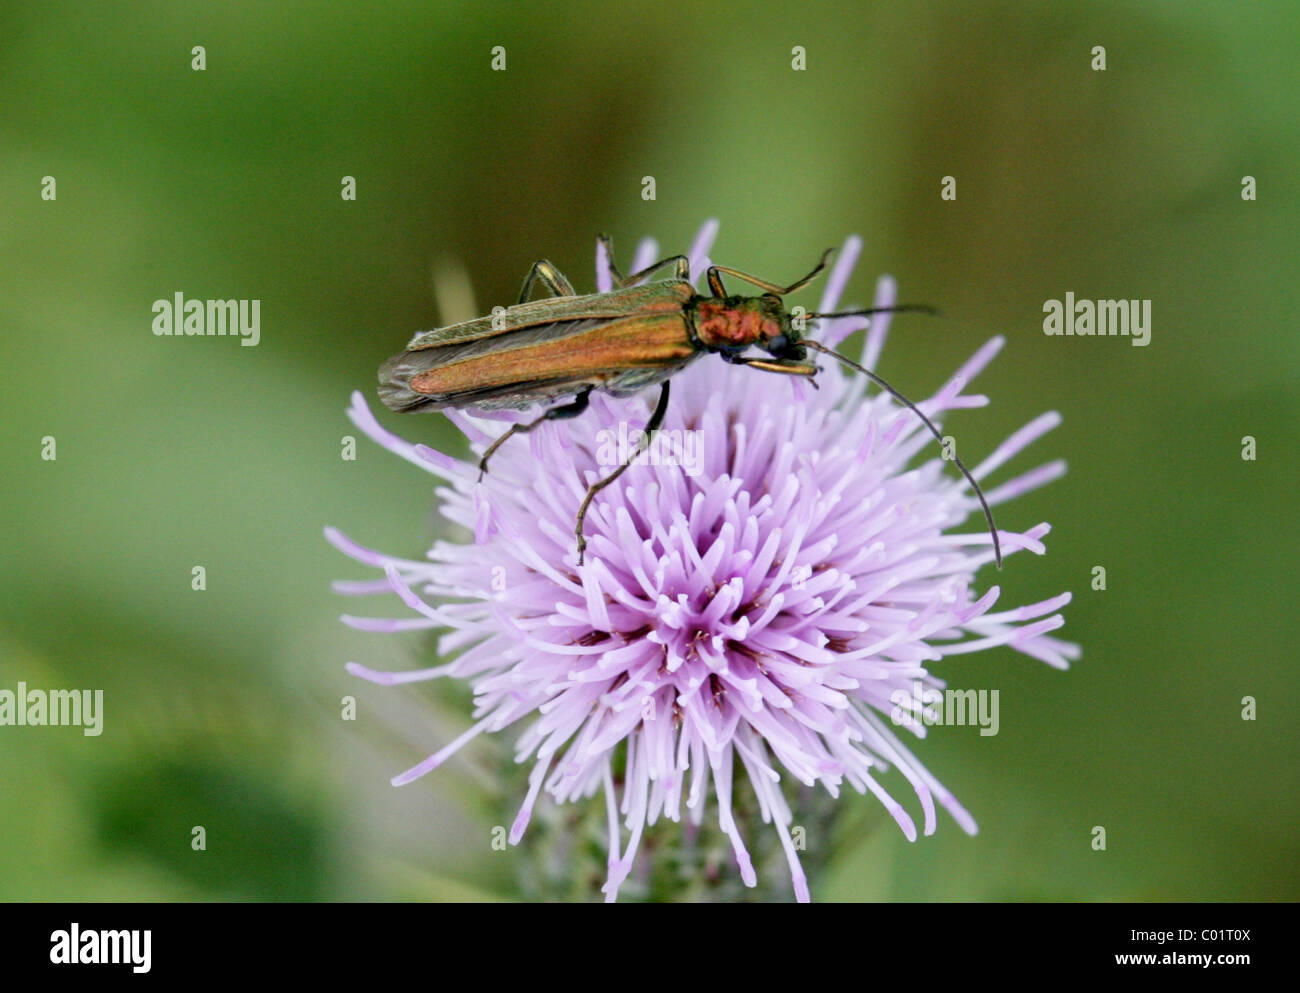 Fleur femelle pattes épaisses Beetle, Oedemera nobilis, Oedemeridae. Juillet, la Vallée d'échecs, Hertfordshire. Banque D'Images